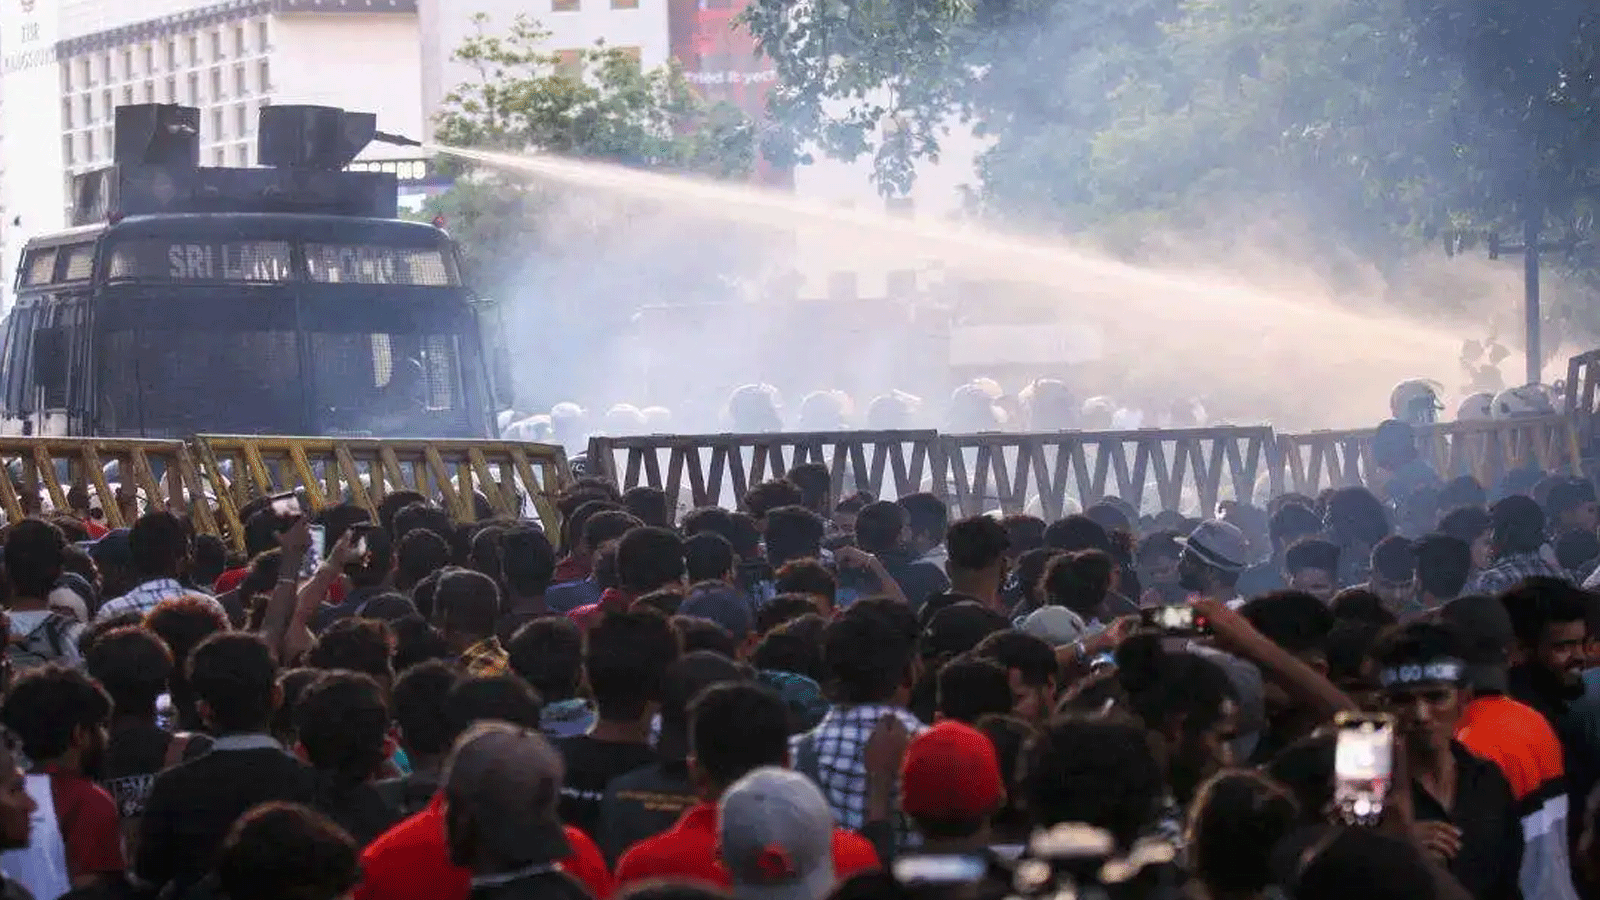 الشرطة تستخدم خراطيم المياه لتفريق المتظاهرين المطالبين باستقالة رئيس سريلانكا جوتابايا راجاباكسا بسبب الأزمة الاقتصادية التي تعصف بالبلاد. كولومبو في 8 تموز\ يوليو 2022